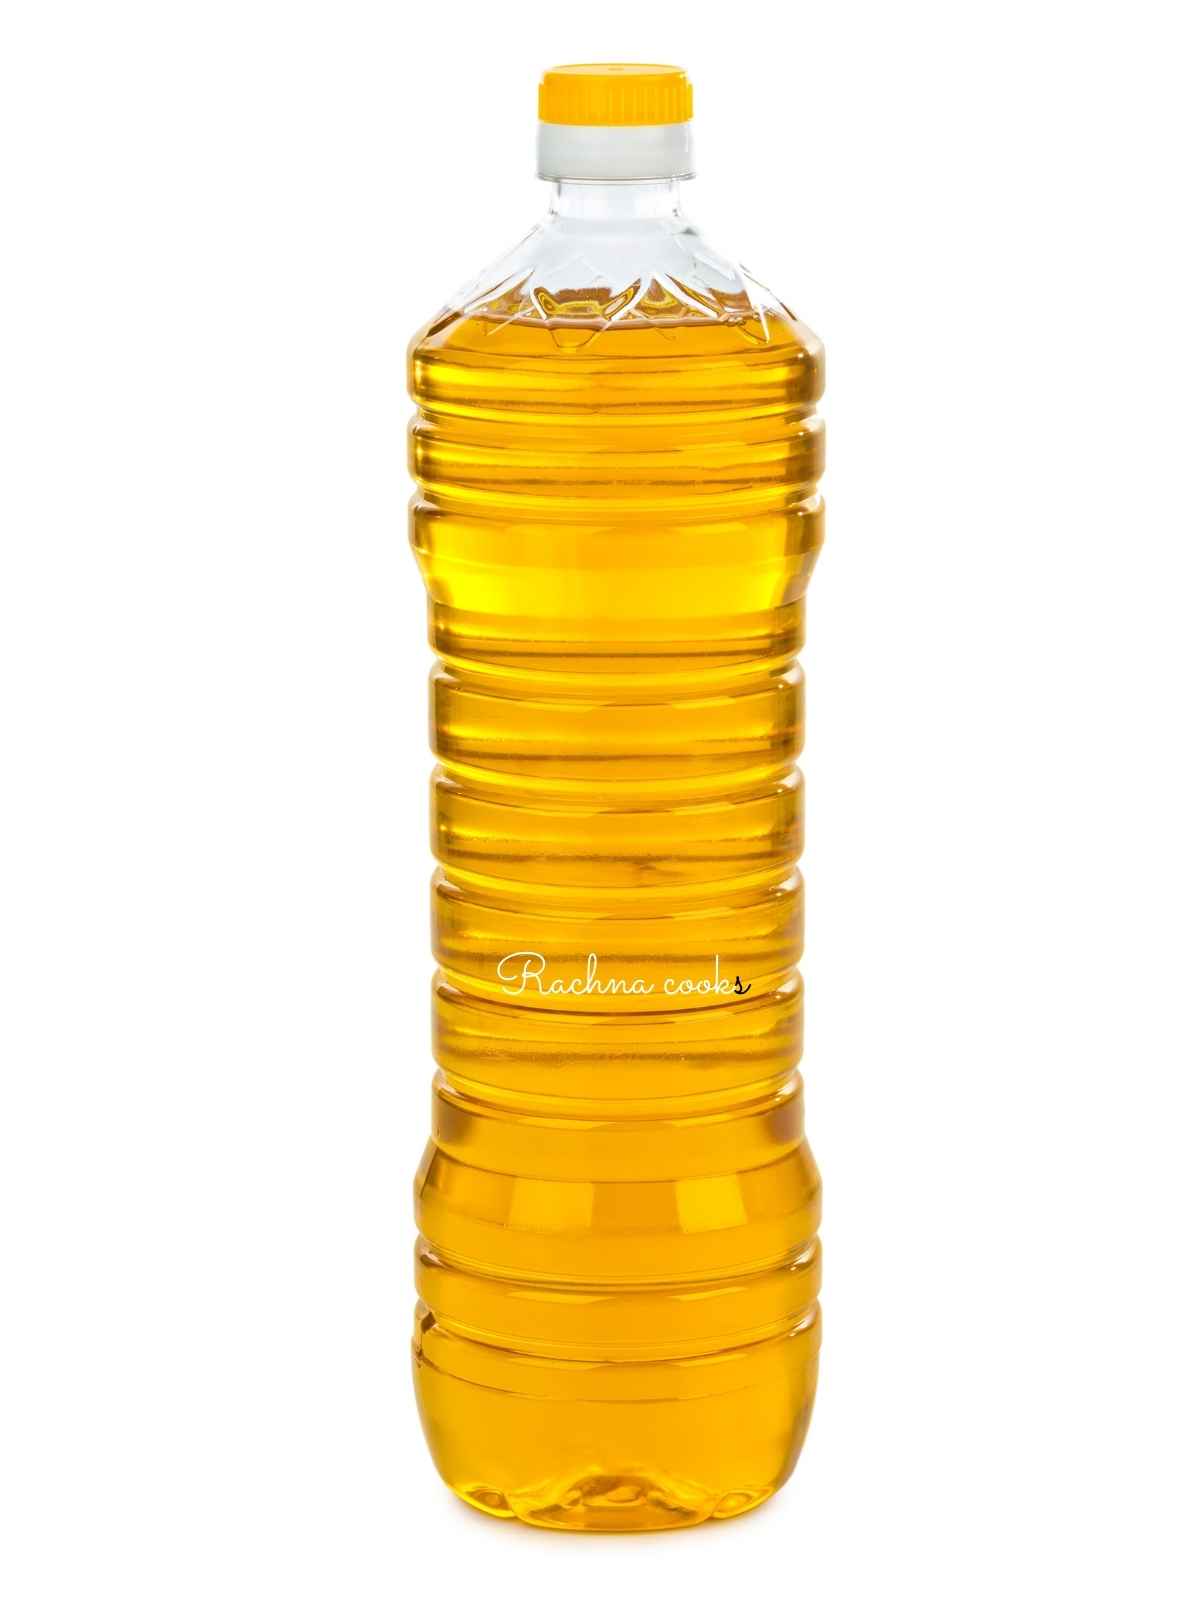 Oil in a tall bottle